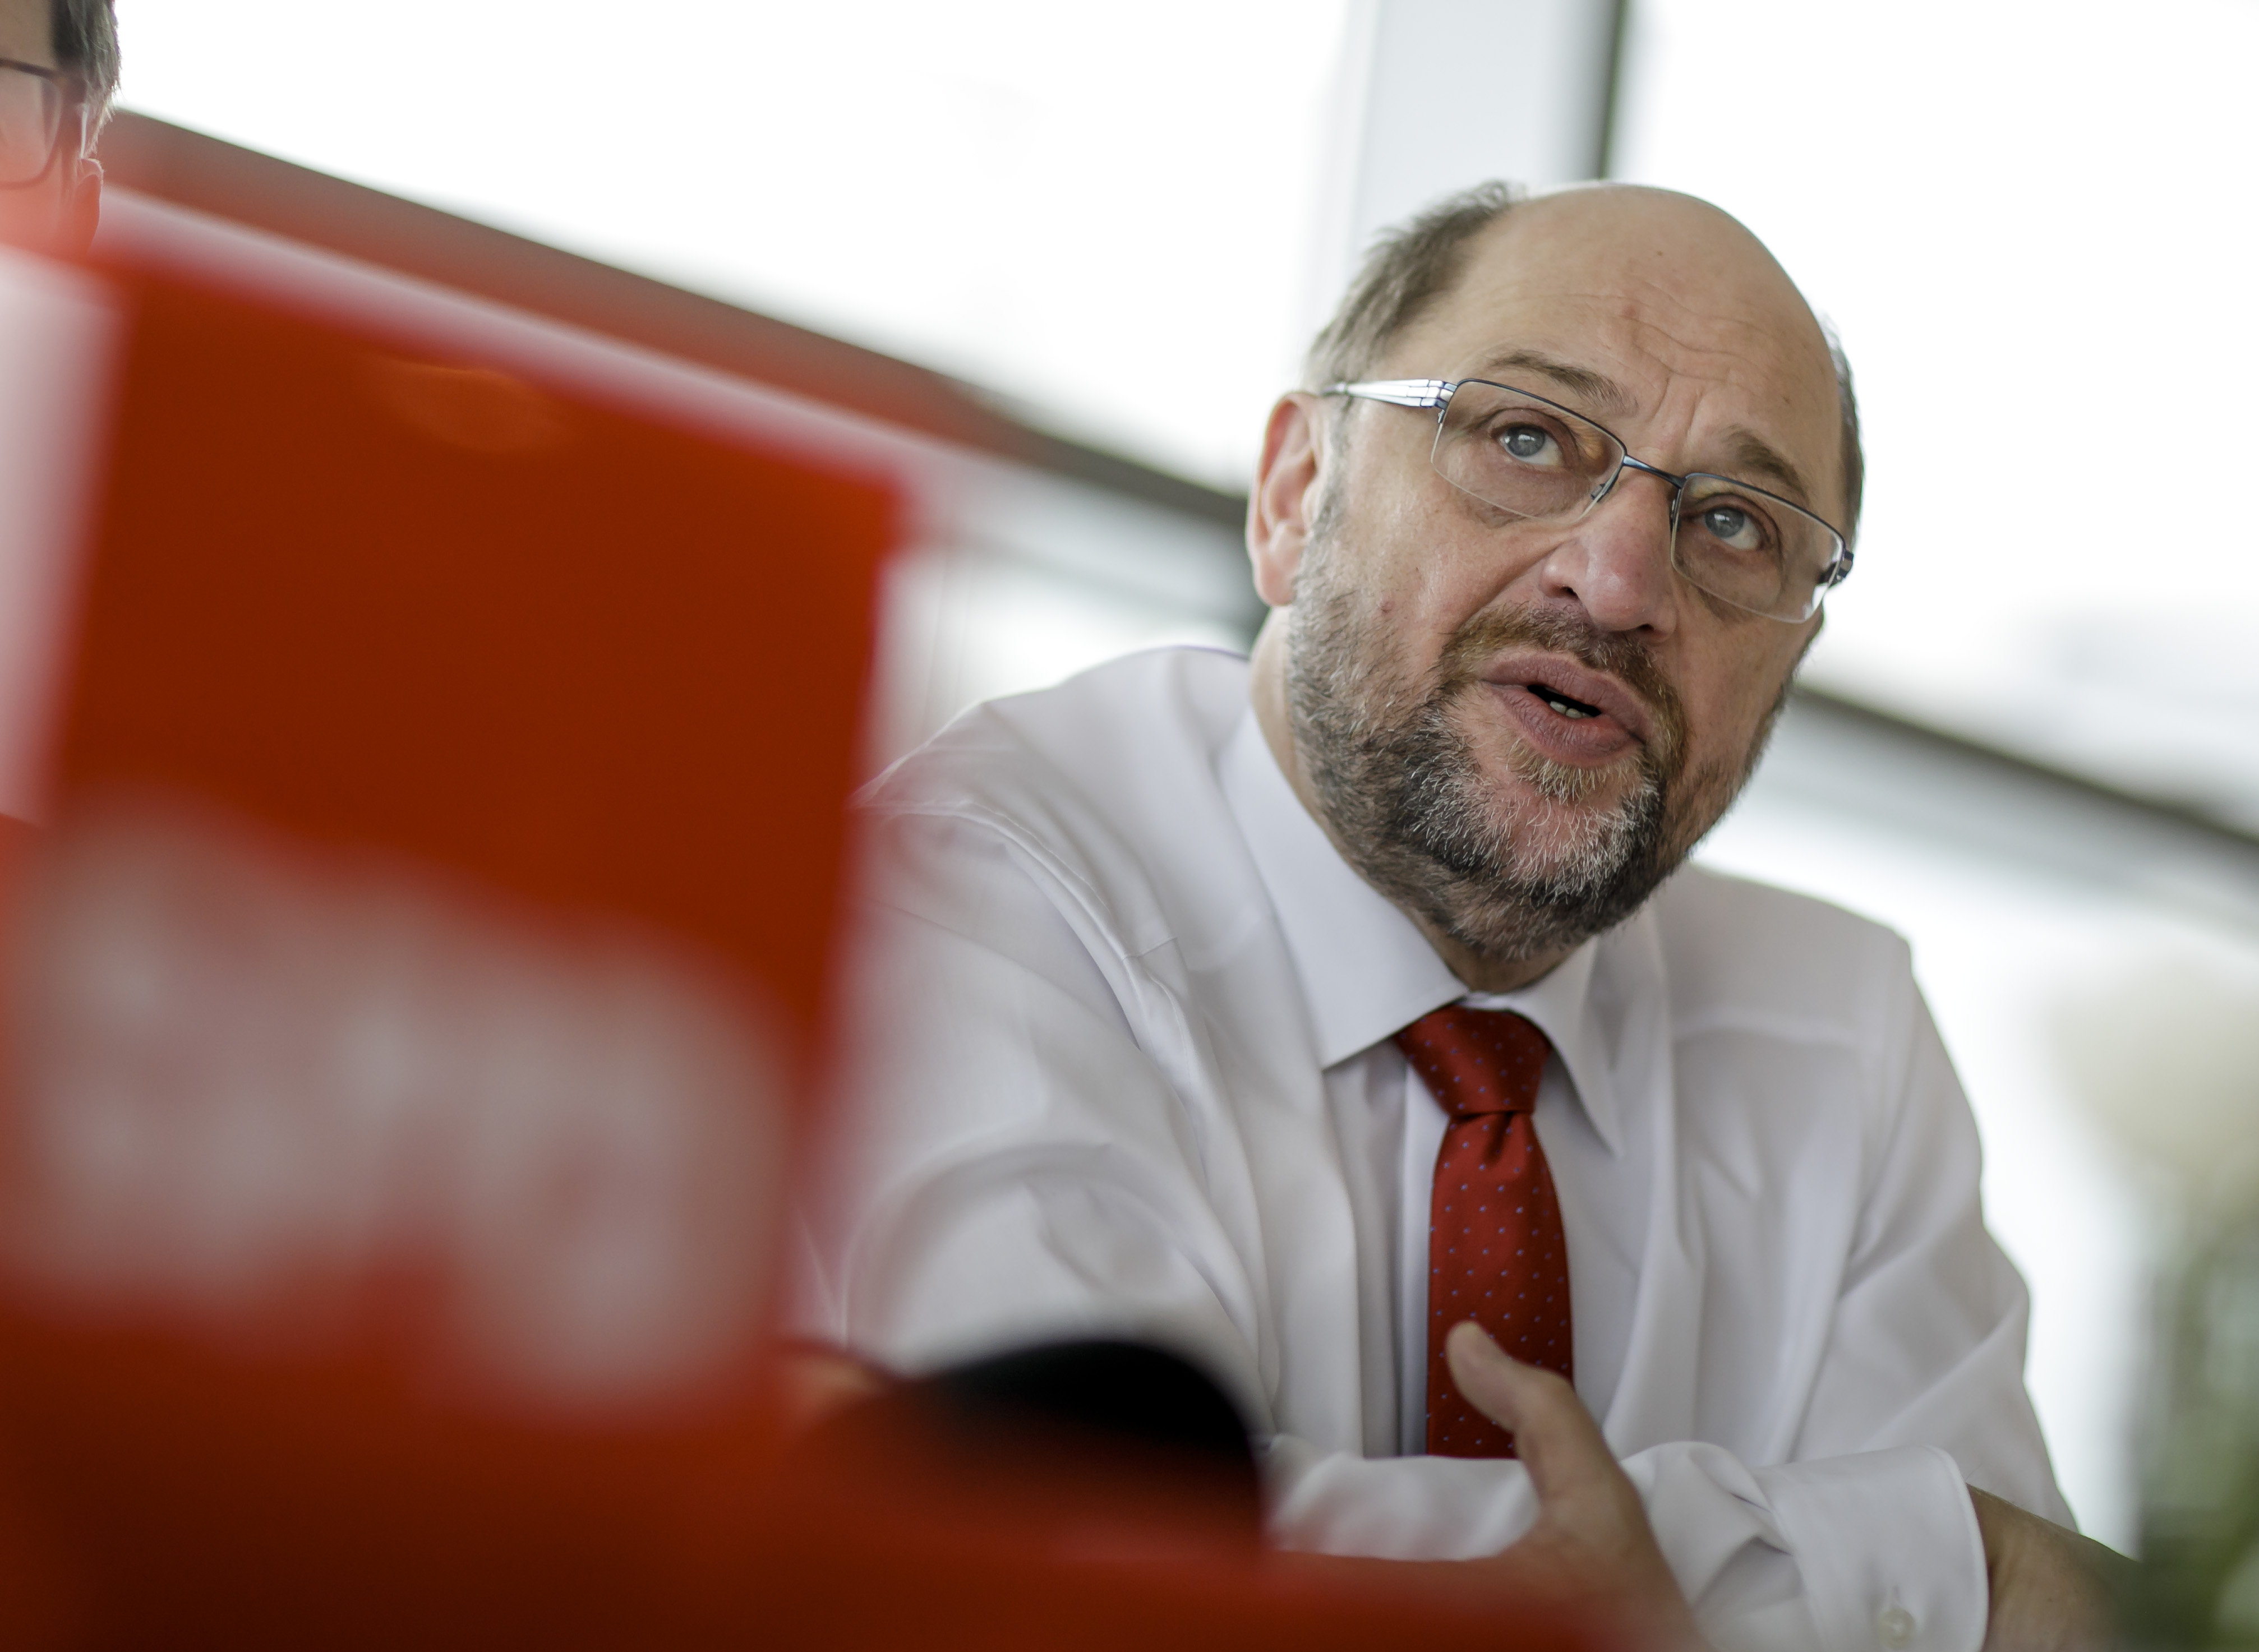 Martin Schulz: „Ich möchte, dass es gerecht zugeht in unserem Land. Das ist die Aufgabe der SPD.“